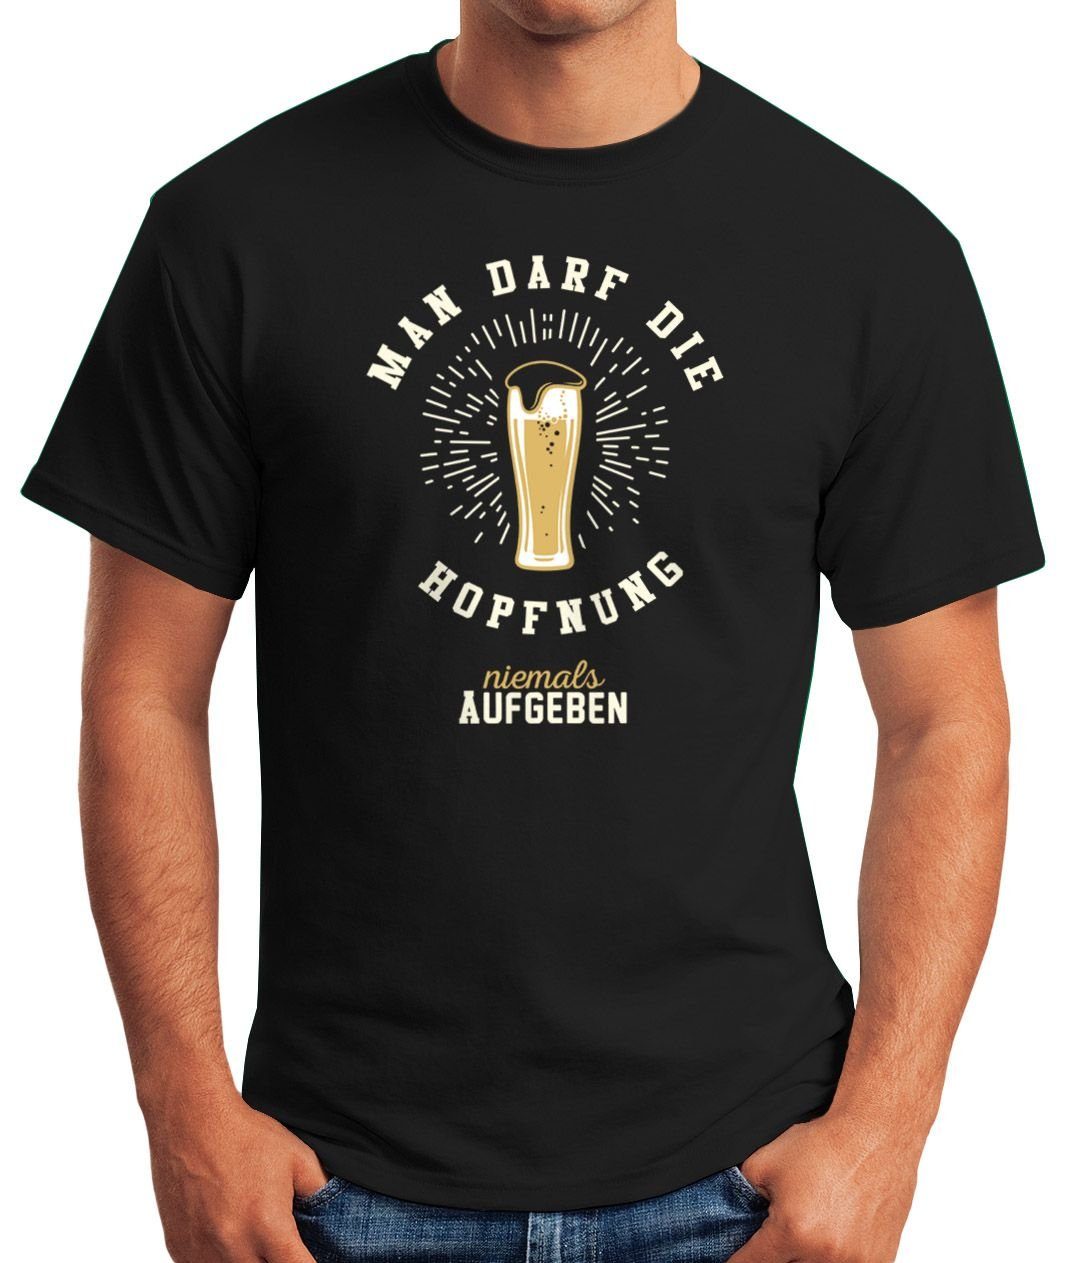 MoonWorks Print-Shirt Herren T-Shirt Man darf Print Moonworks® lustiges Shirt aufgeben niemals Party Bier Hopfnung mit die